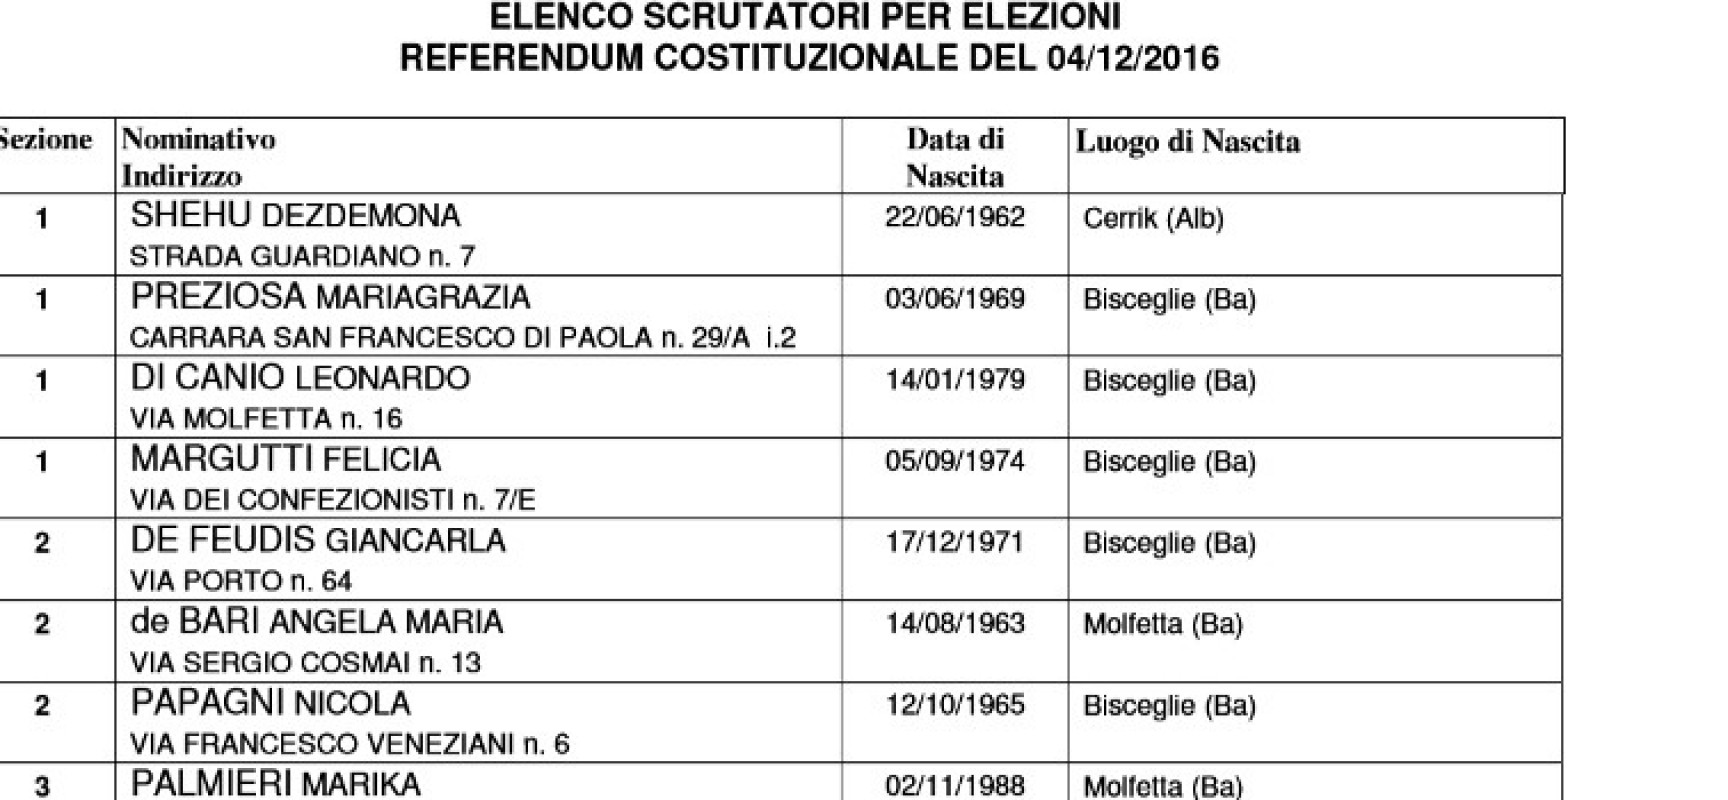 Referendum costituzionale 4 dicembre, ecco gli scrutatori sorteggiati / ELENCO